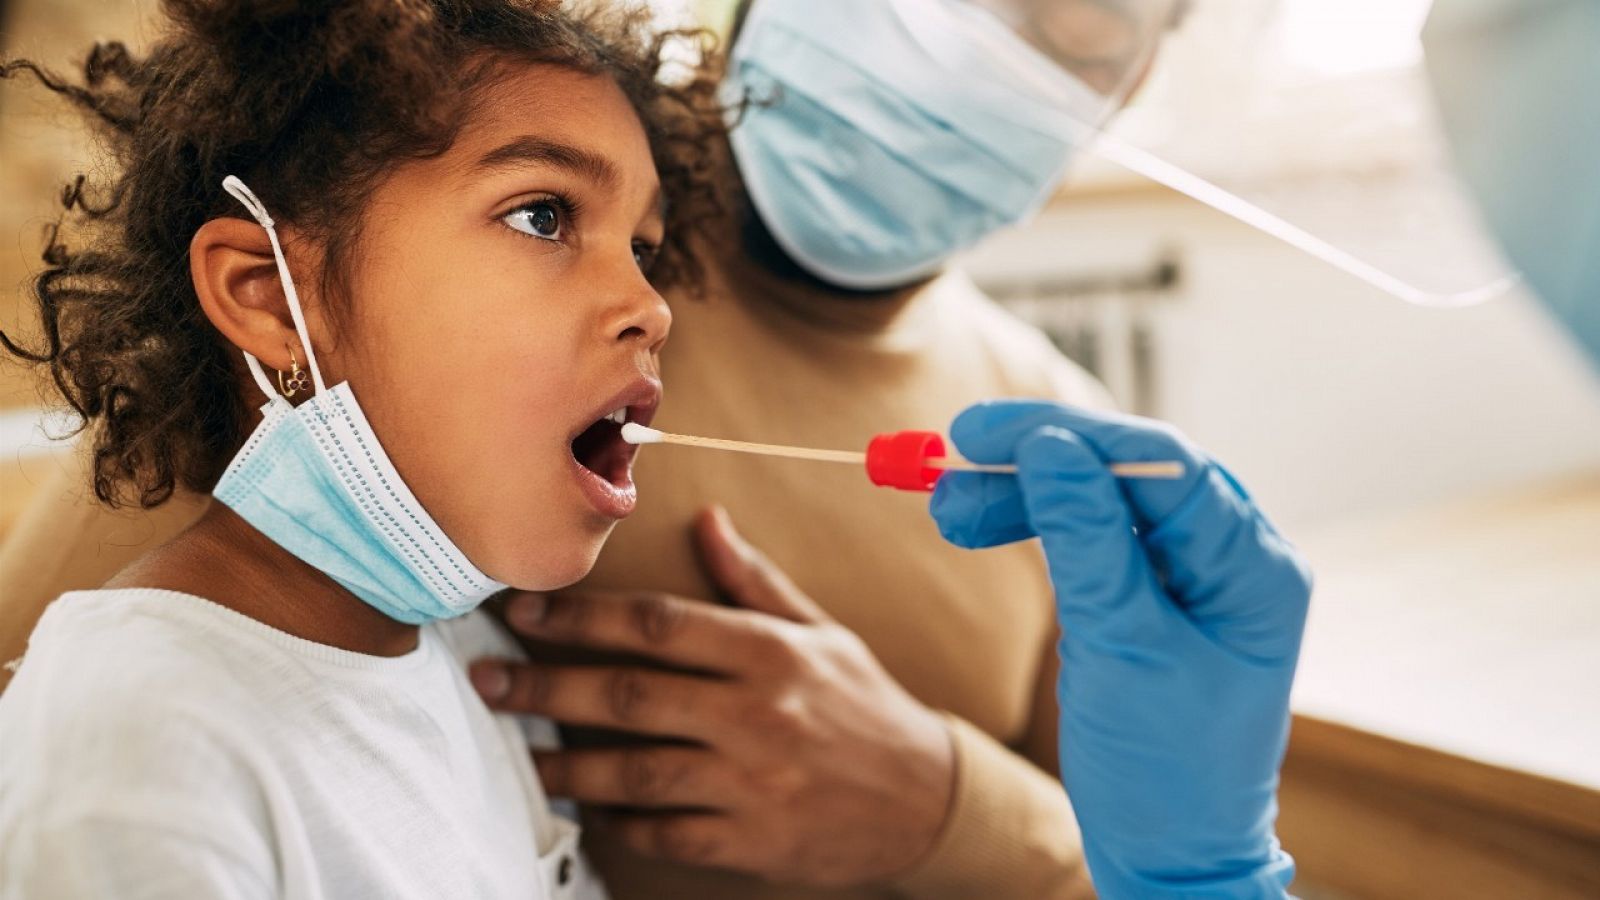 Profesional sanitario toma una muestra para el test virológico de una niña, en una imagen de archivo.